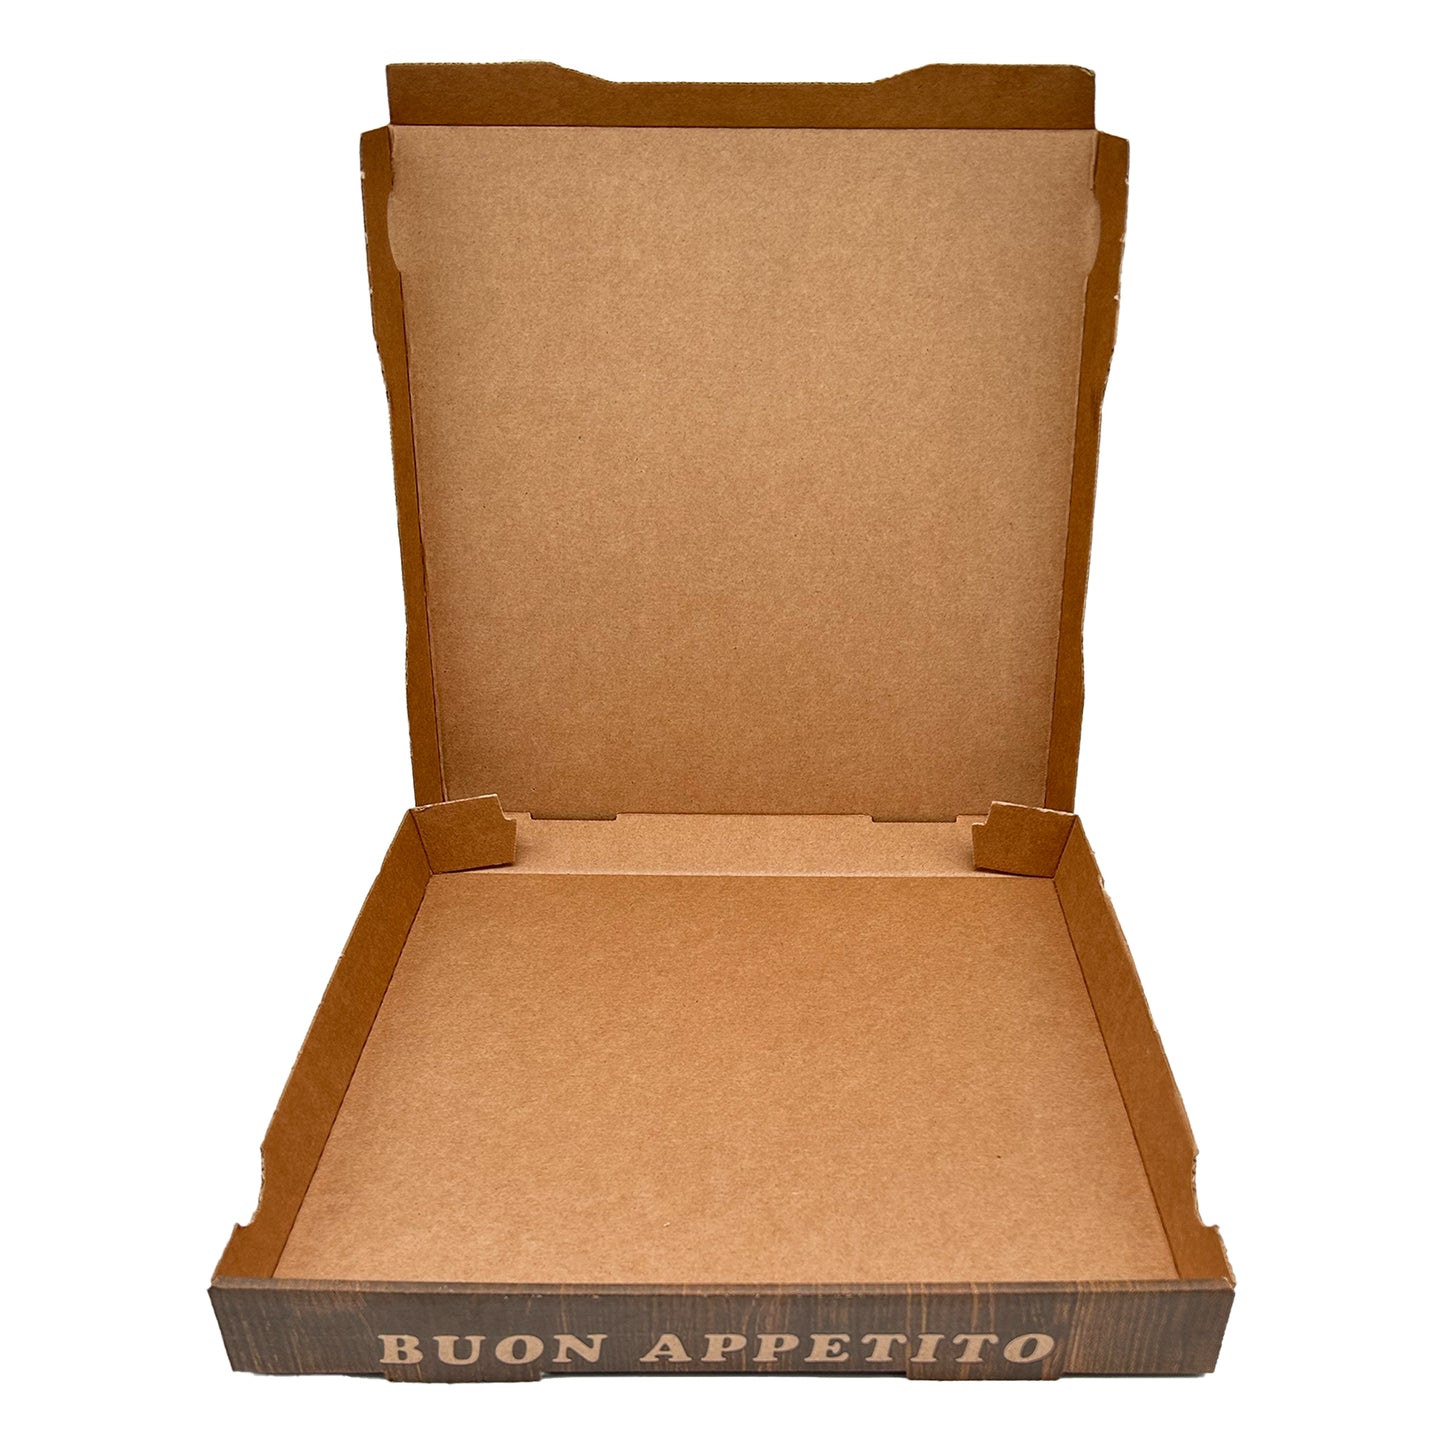 Pizzakarton Braun mit Druck 100Stk aus Kraftpapier